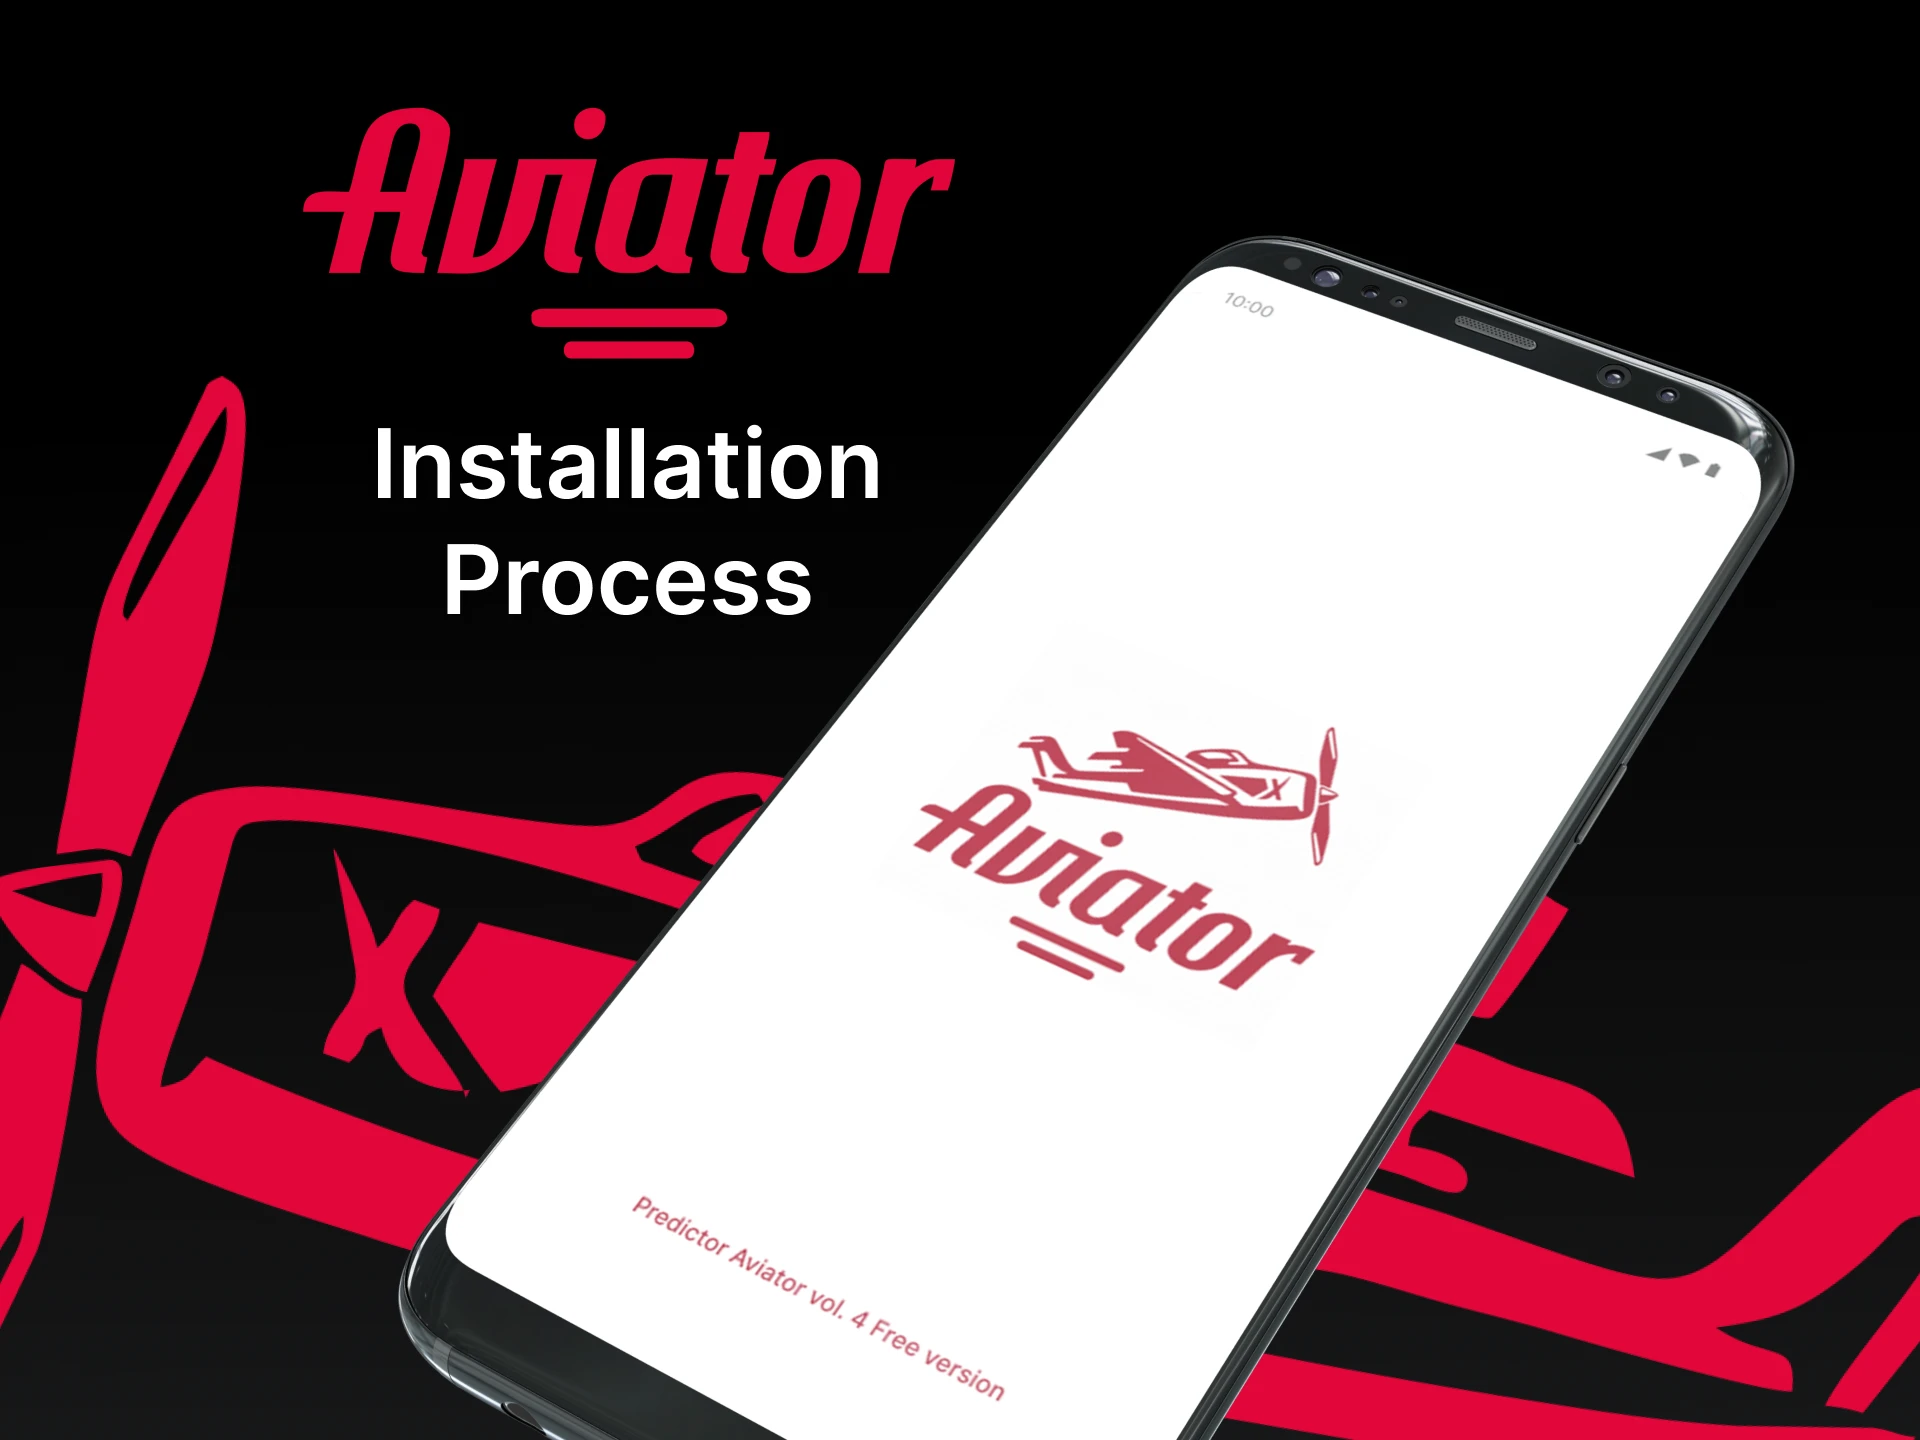 Install Aviator Predictor.